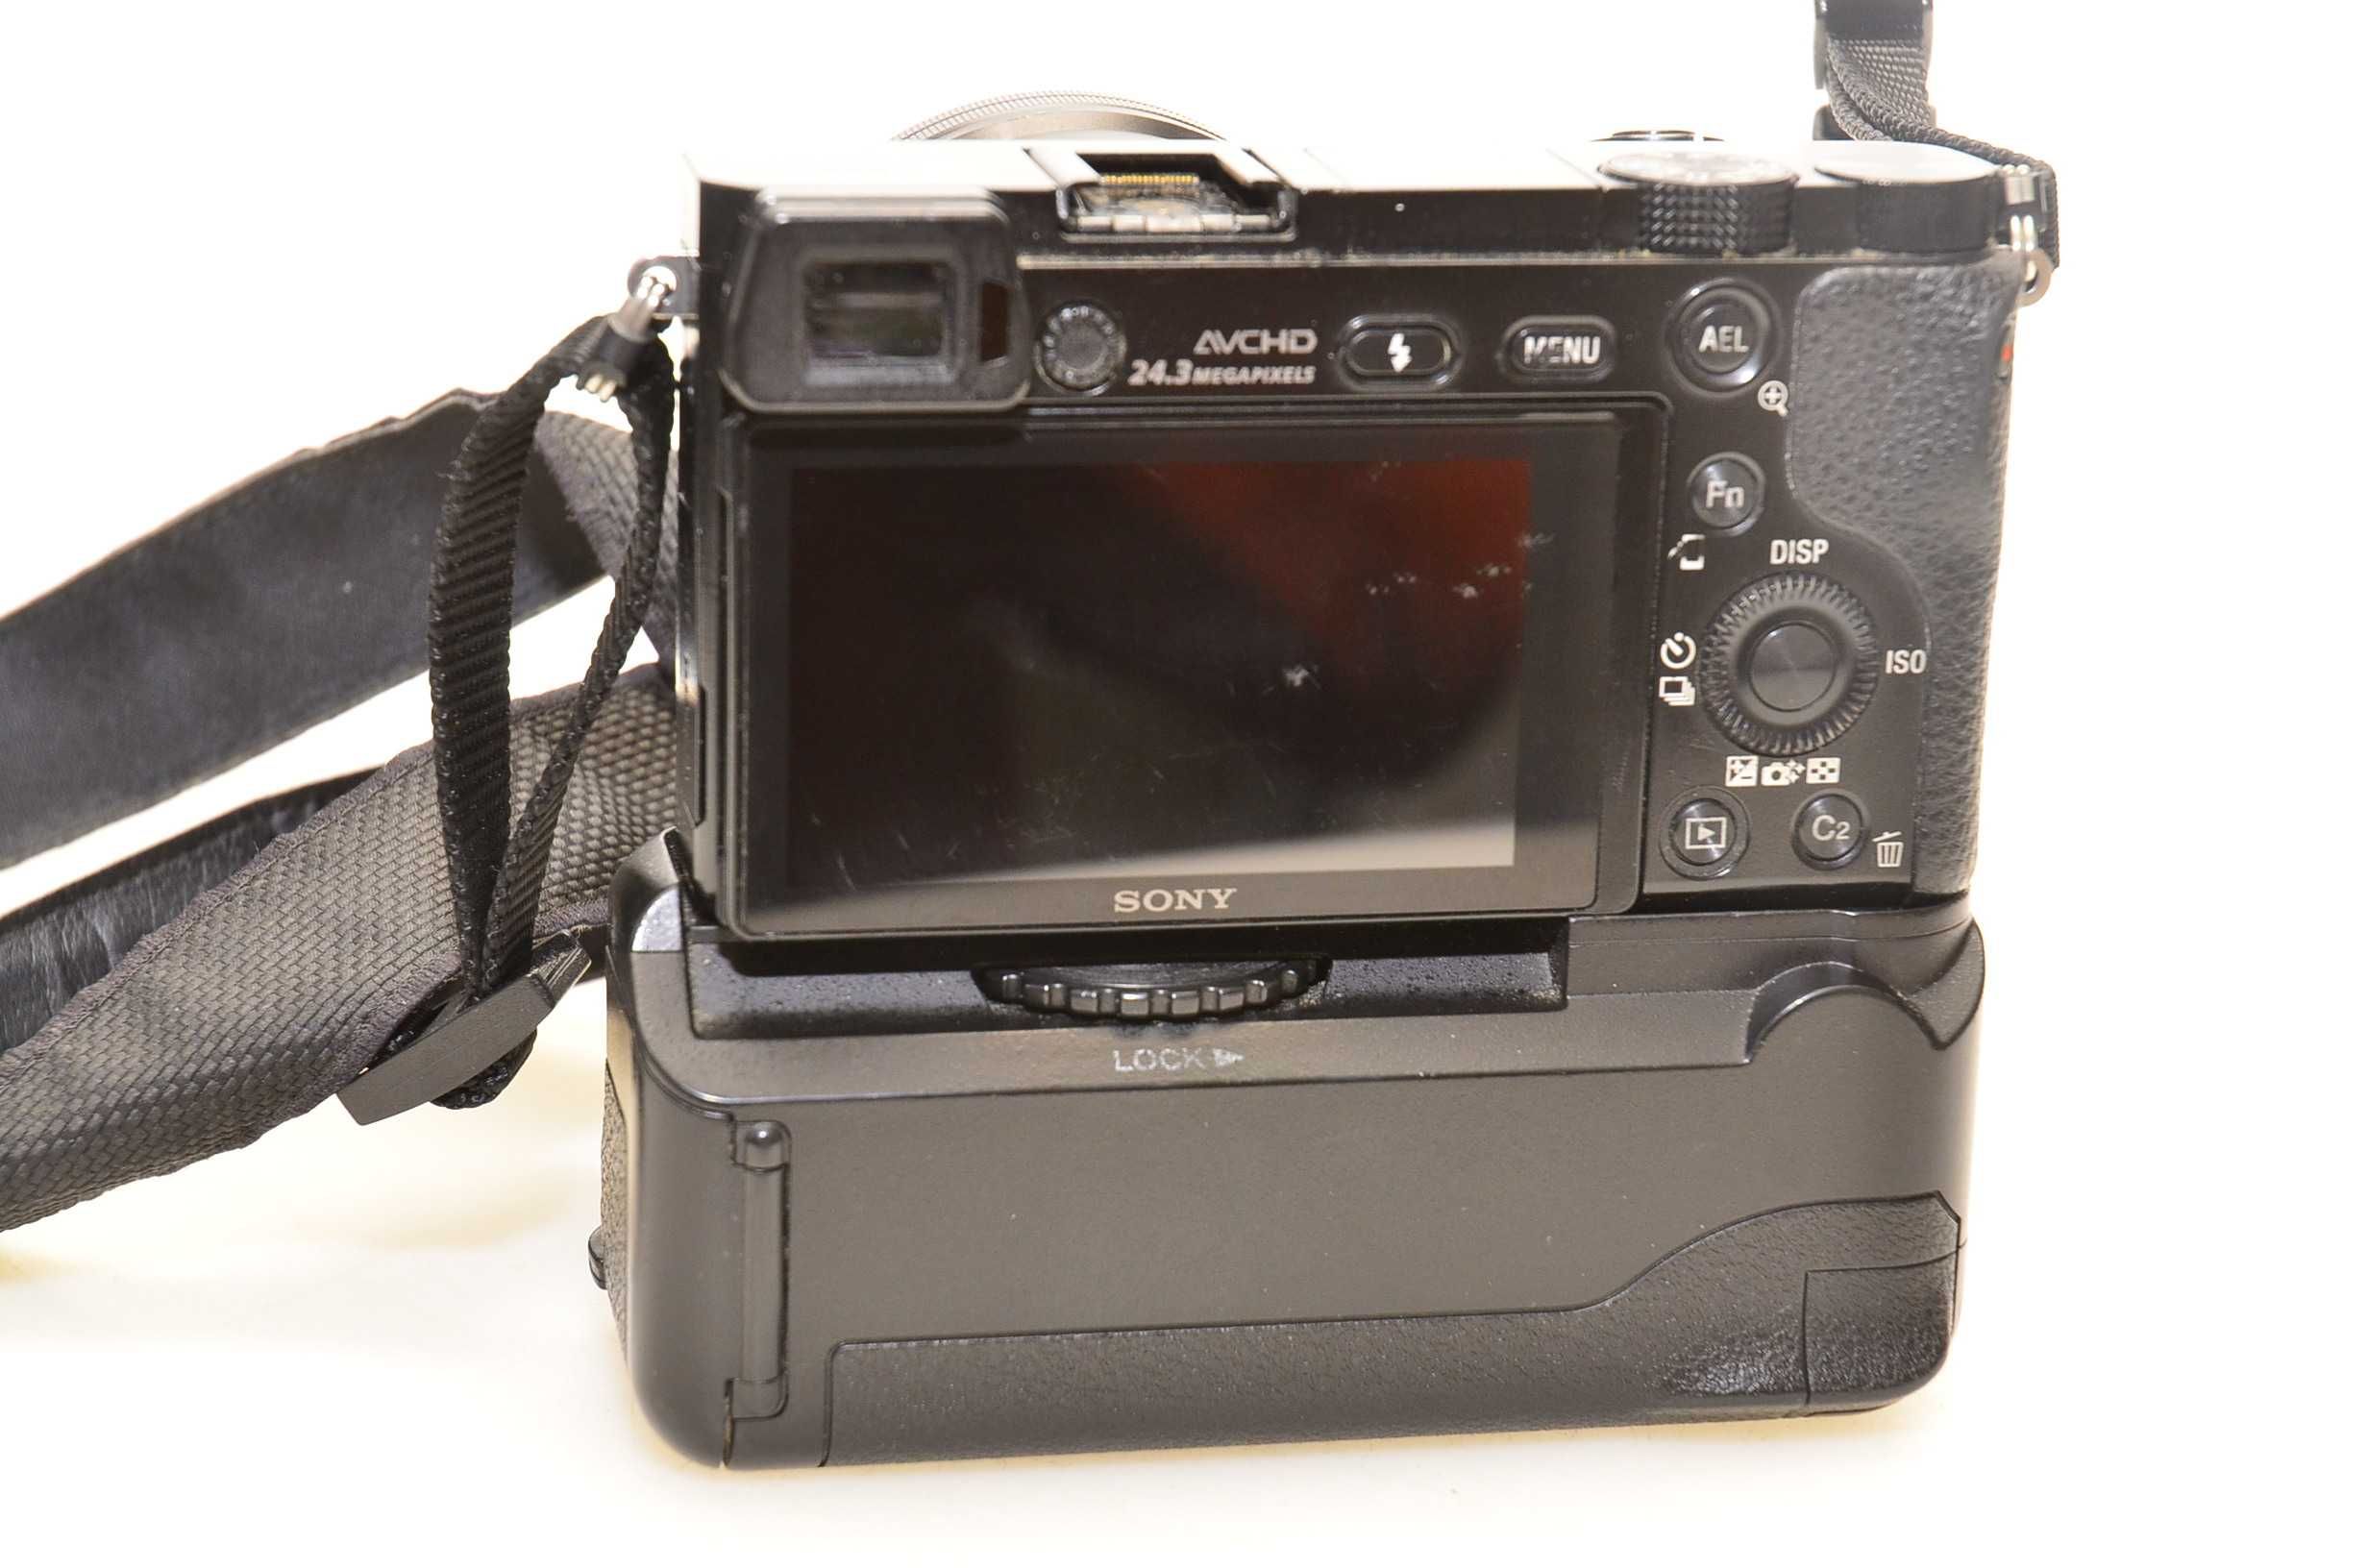 Aparat fotograficzny Sony A6000 korpus + obiektyw 16-50